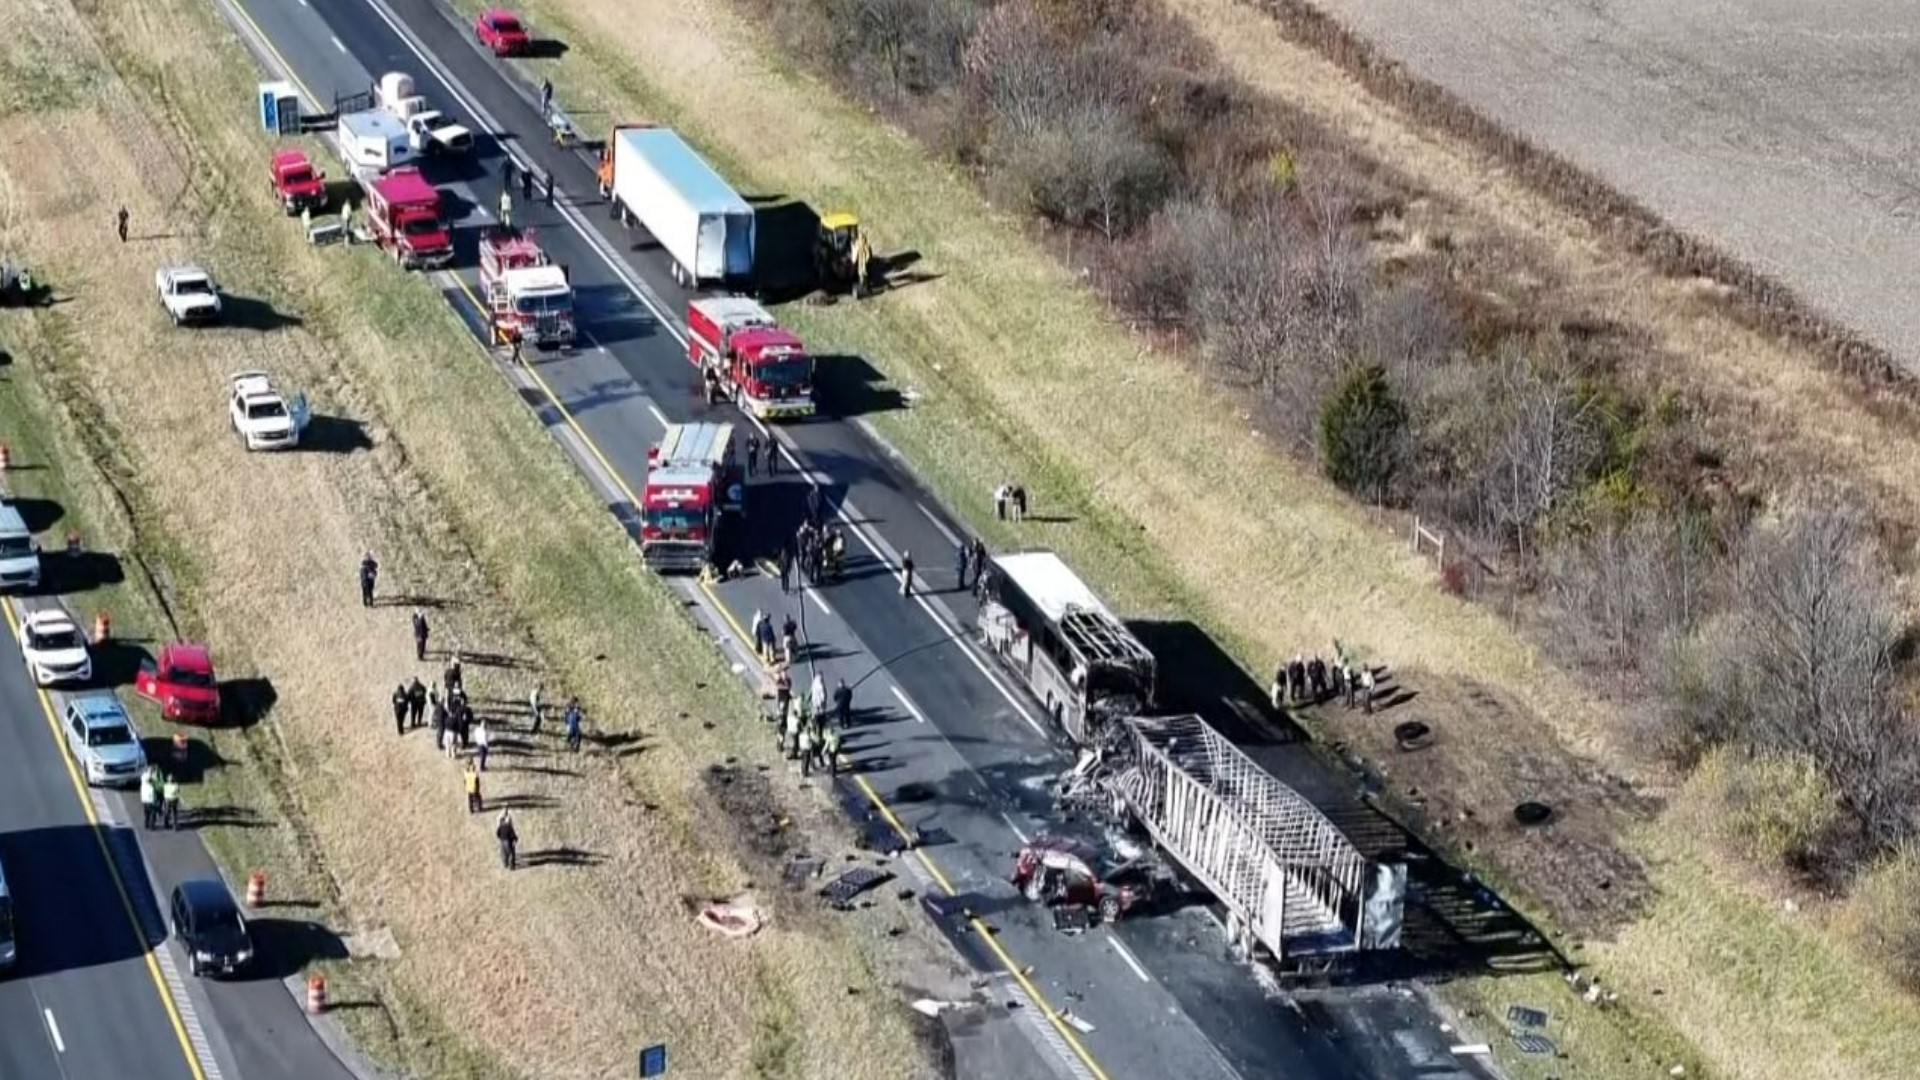 Drone footage shows Ohio bus crash that left 6 dead, more than a dozen